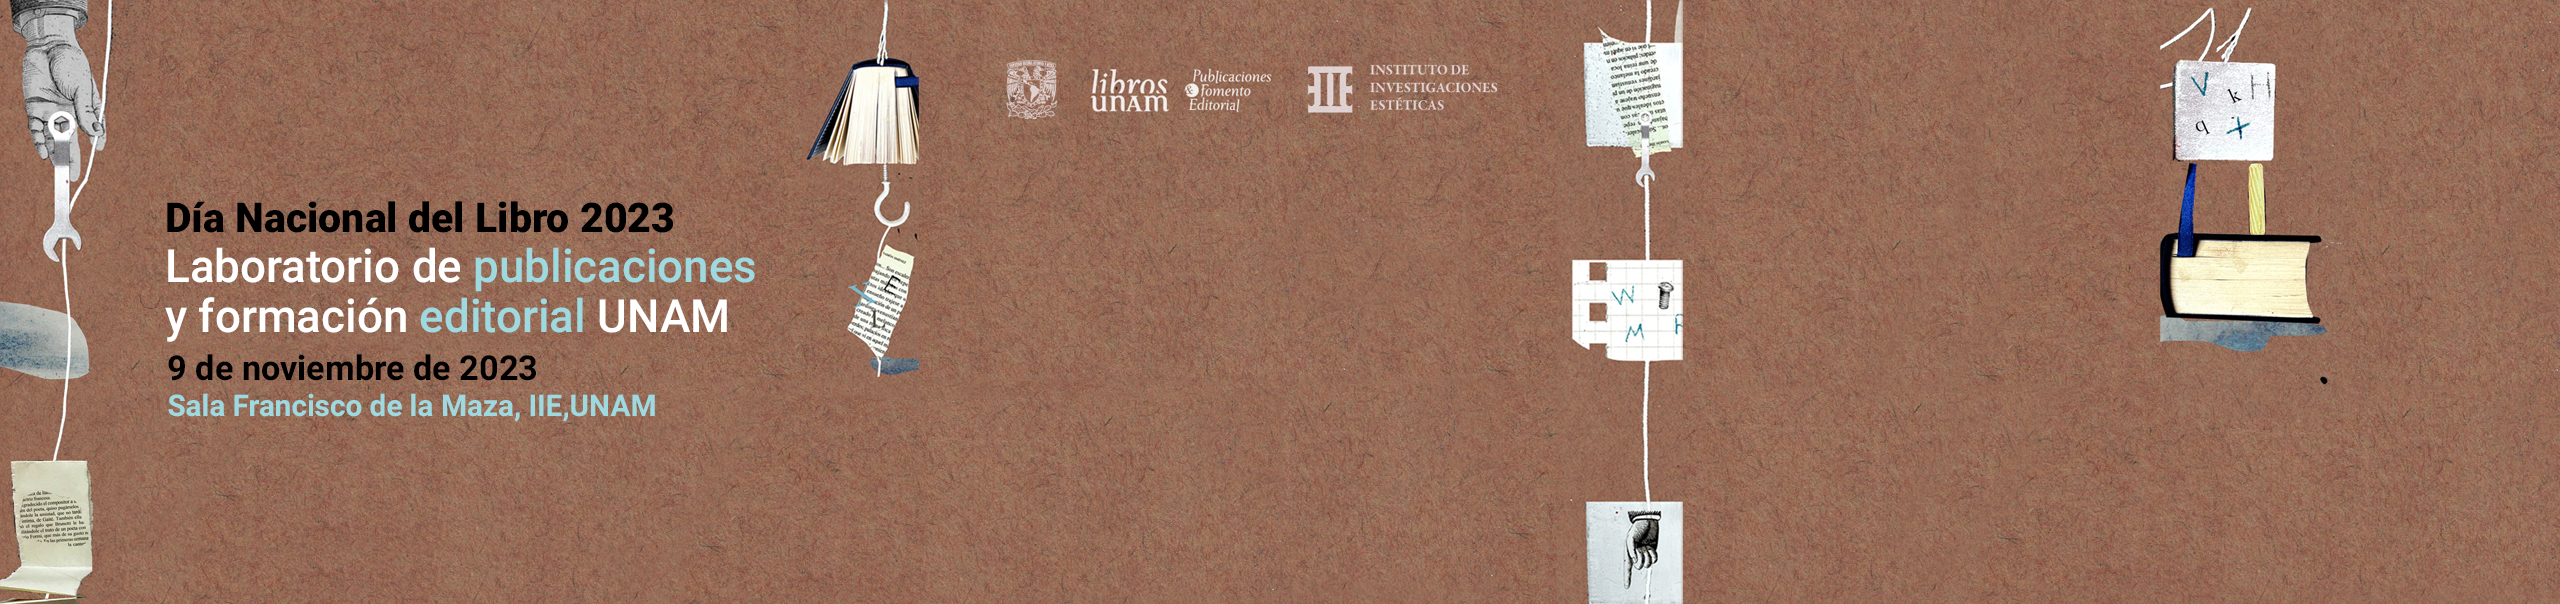 Celebración por el día nacional del libro 2023 laboratorio de publicaciones y formación editorial UNAM